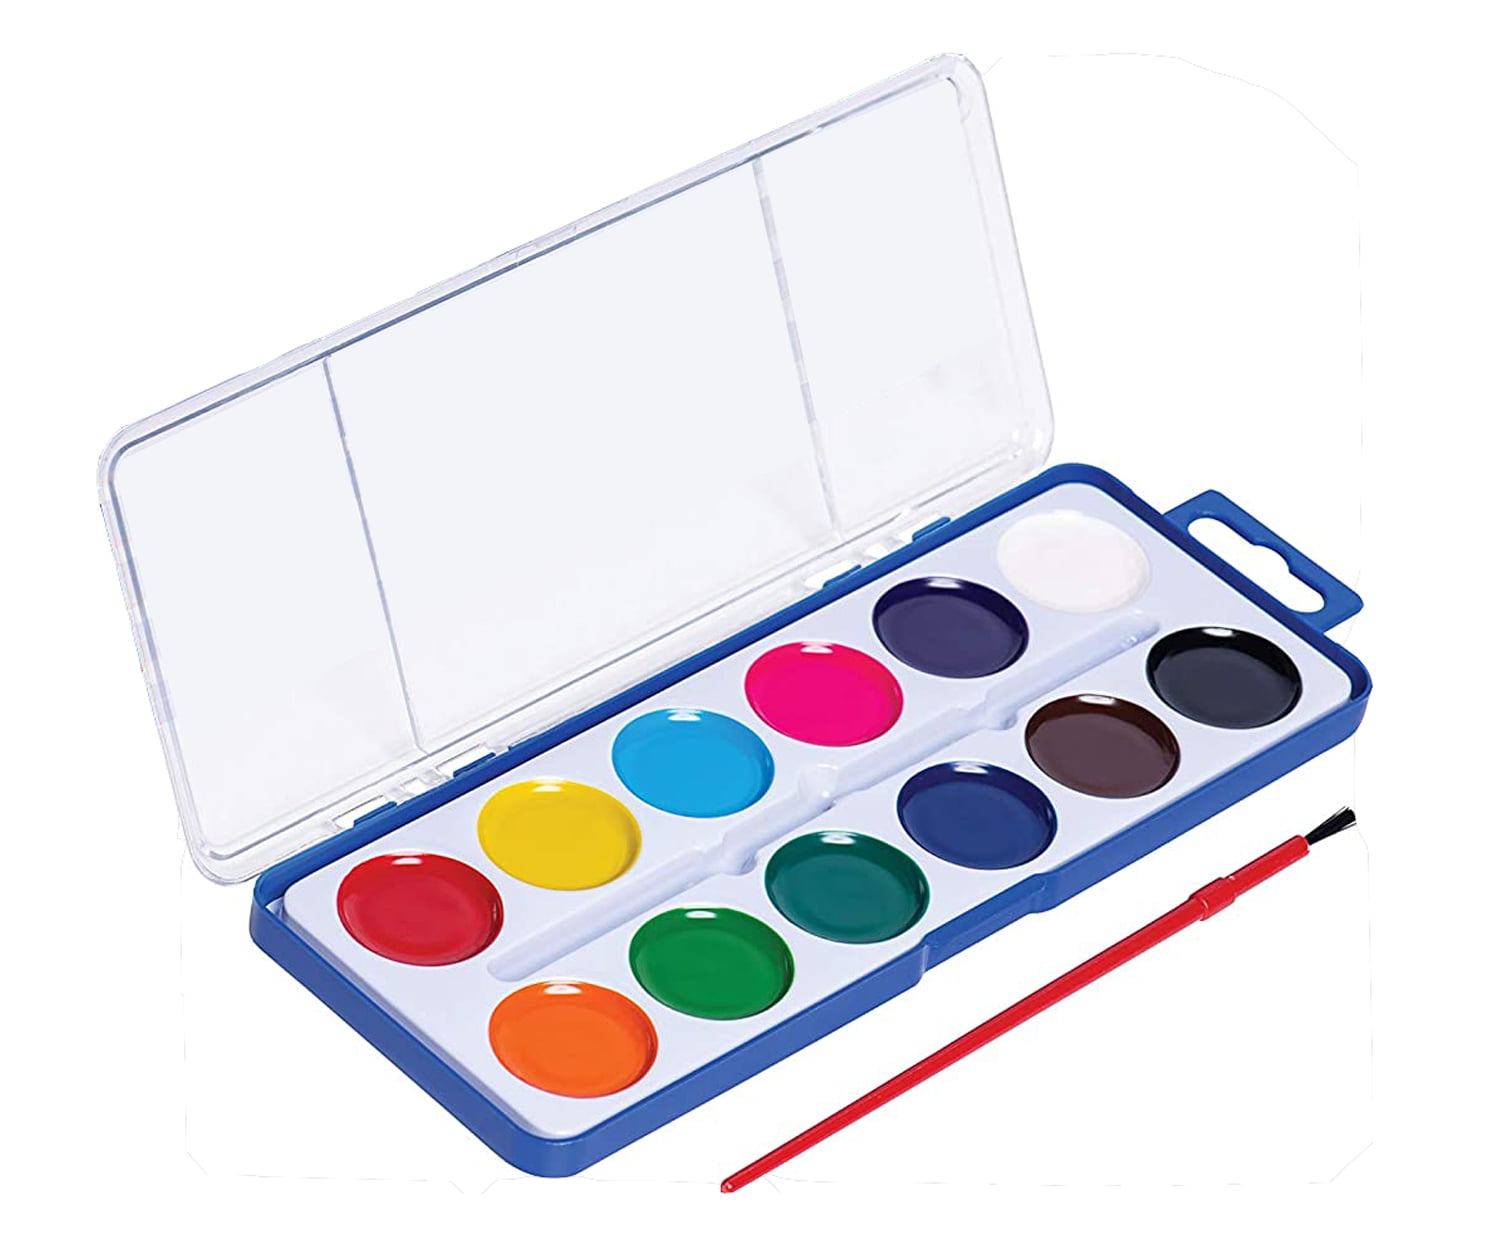 16colors Semi-Moist Paint Washable Watercolor Paint Set for Kids - China  Watercolor Paint Set for Kids, Semi-Moist Watercolor Paint